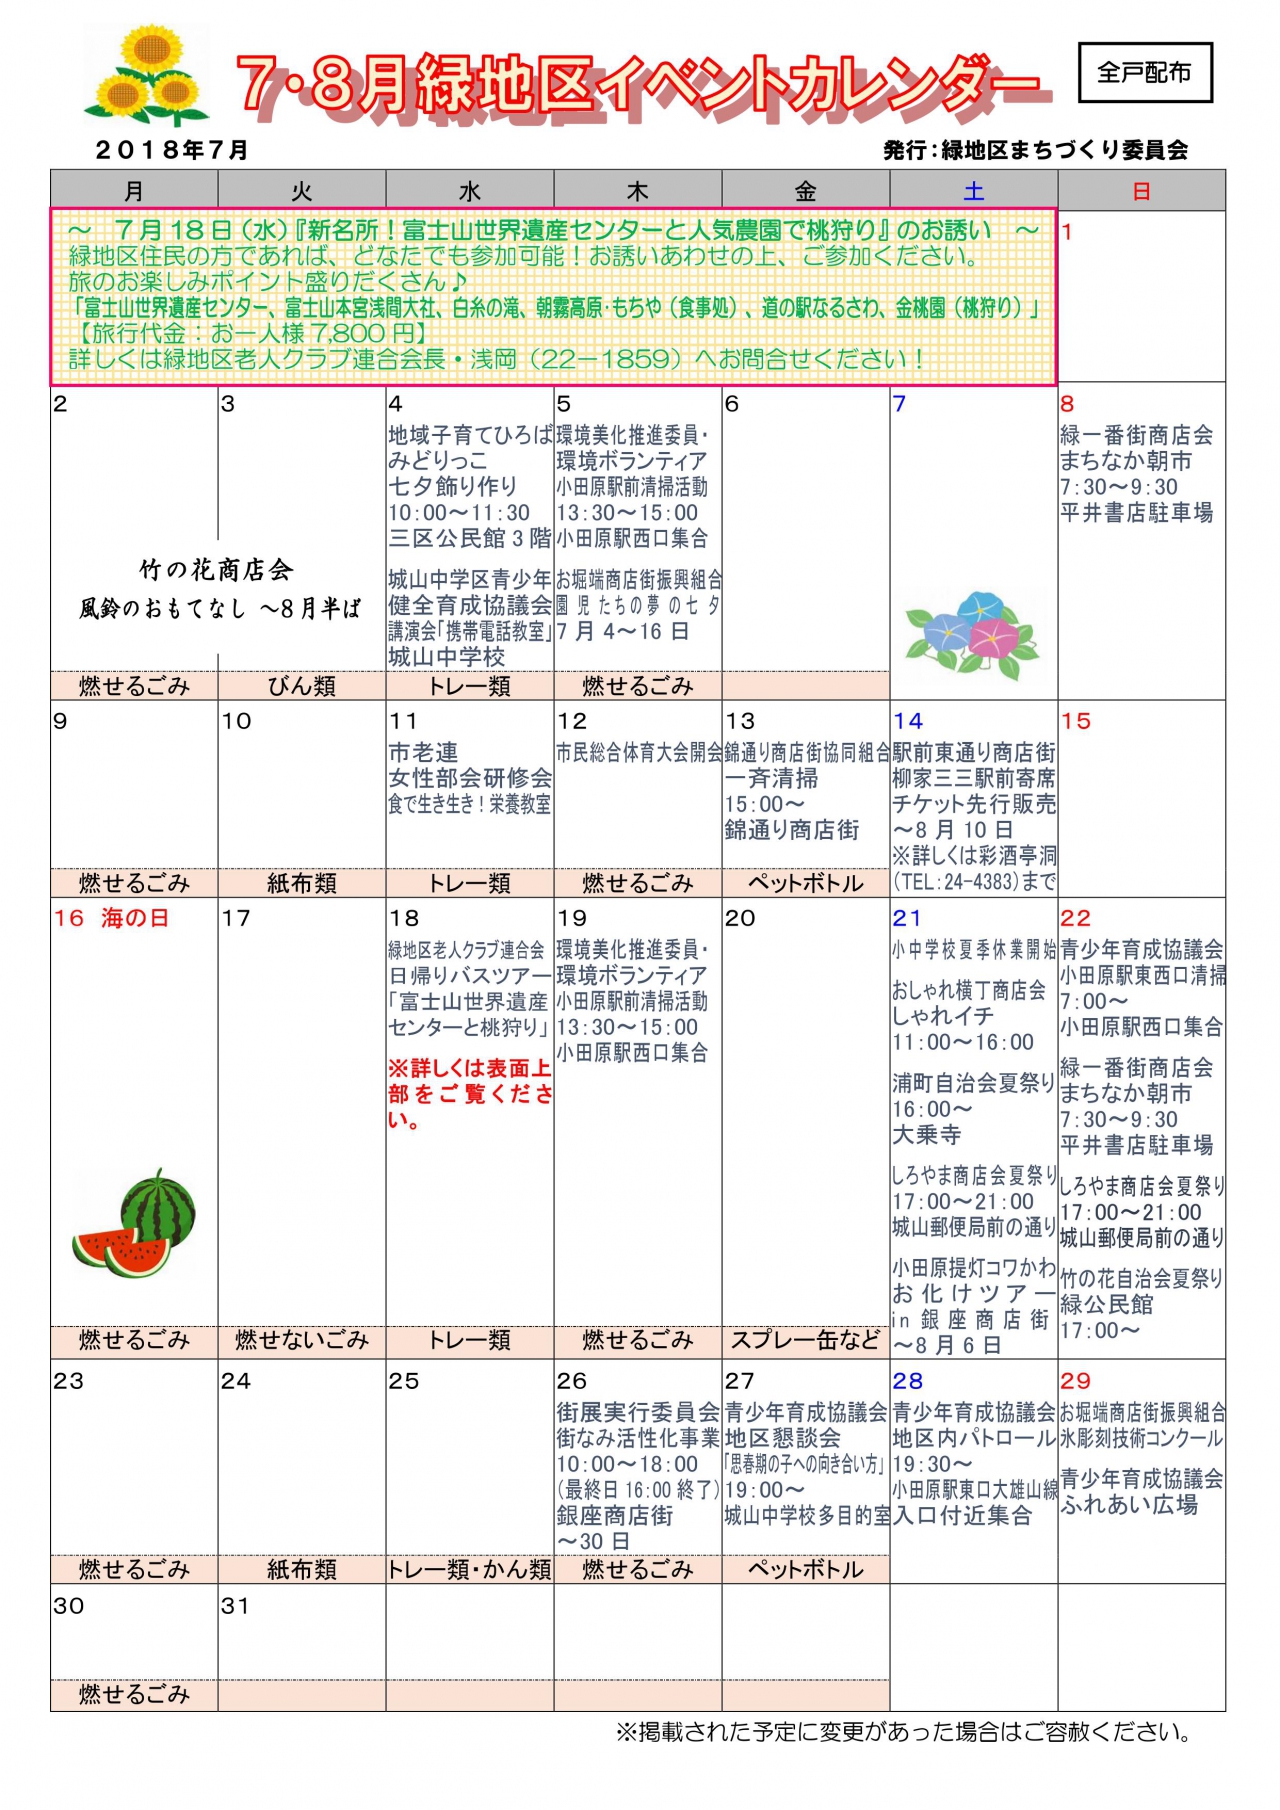 緑地区イベントカレンダー 7月8月発行 各自治会からのお知らせ 小田原市自治会総連合